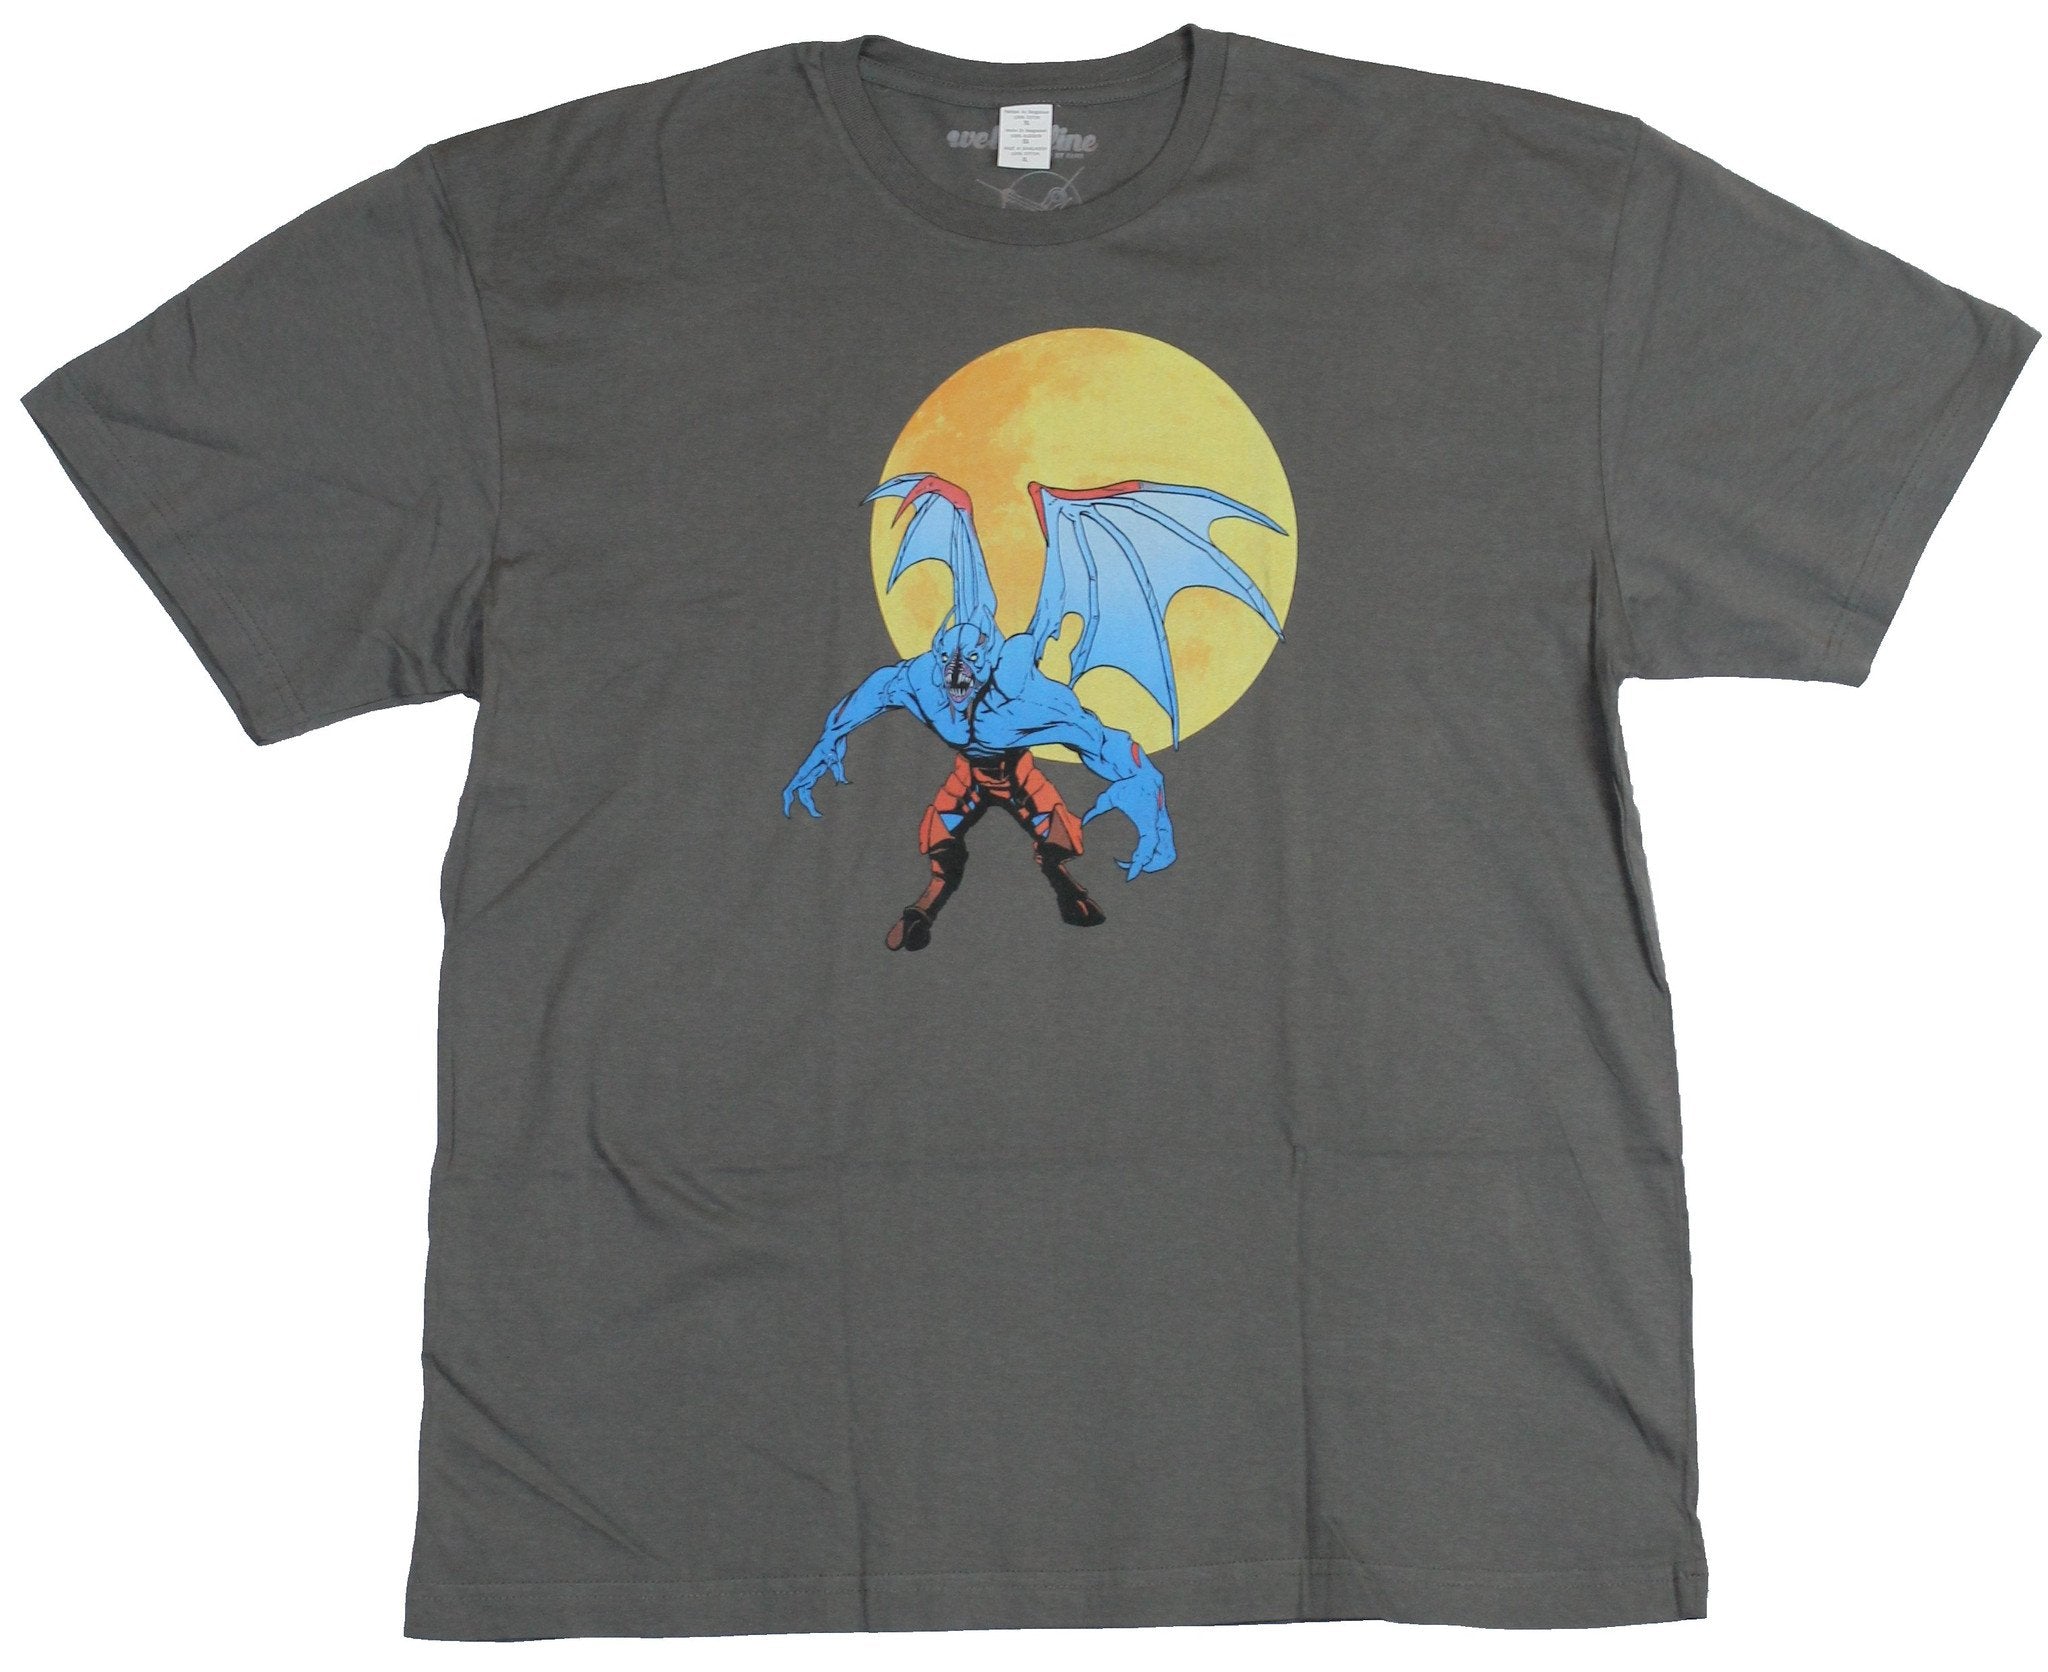 Dota 2 Mens T-Shirt - Harvest Moon Flying Bat Guy